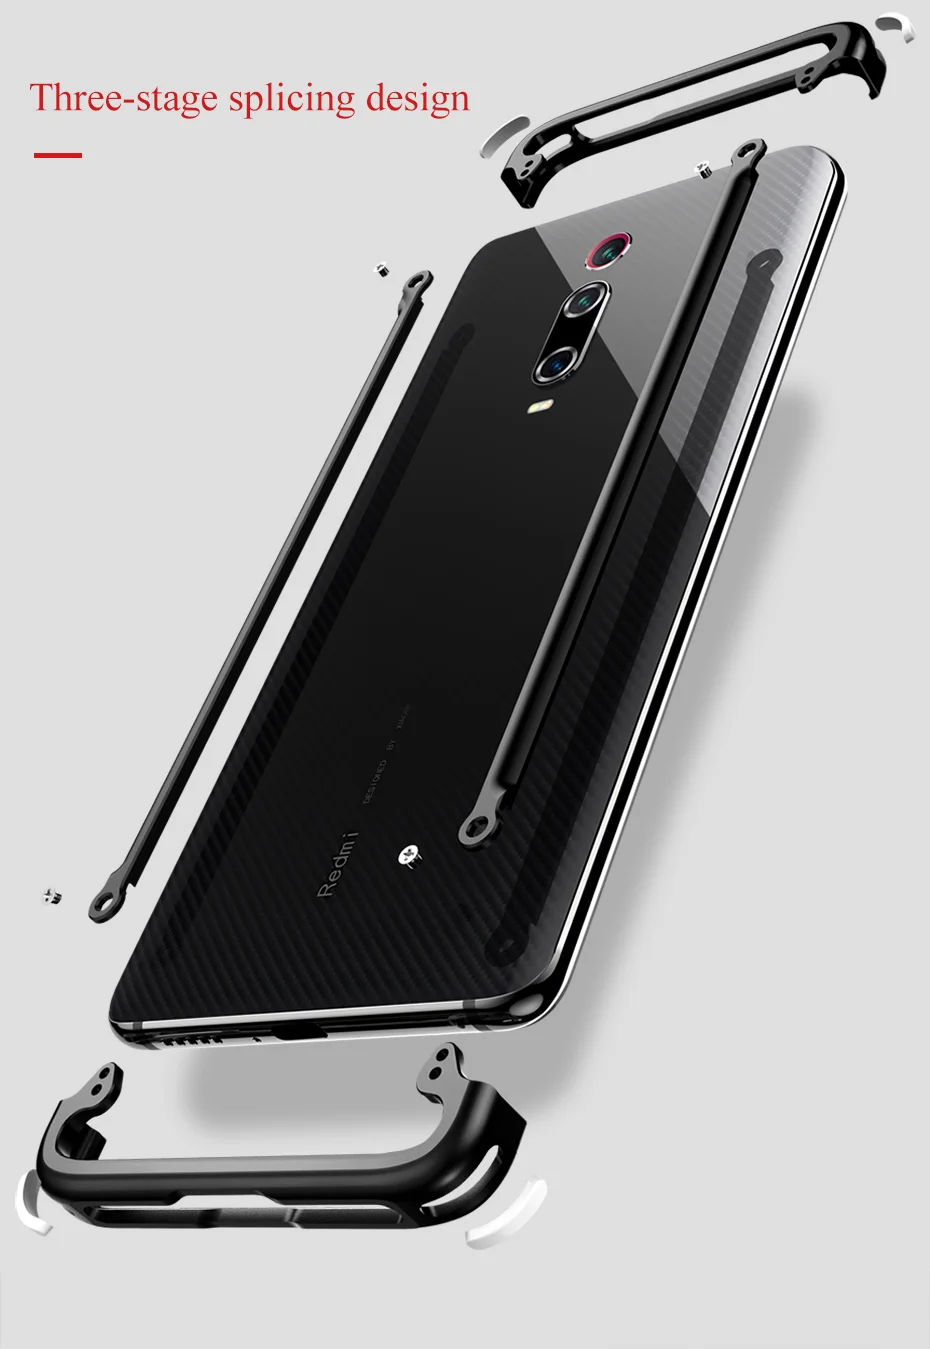 Металлический чехол с подушкой безопасности для Redmi Note 7 Redmi K20, персональный металлический бампер, чехол для Redmi Note 7 Pro K20 Pro, чехол для телефона